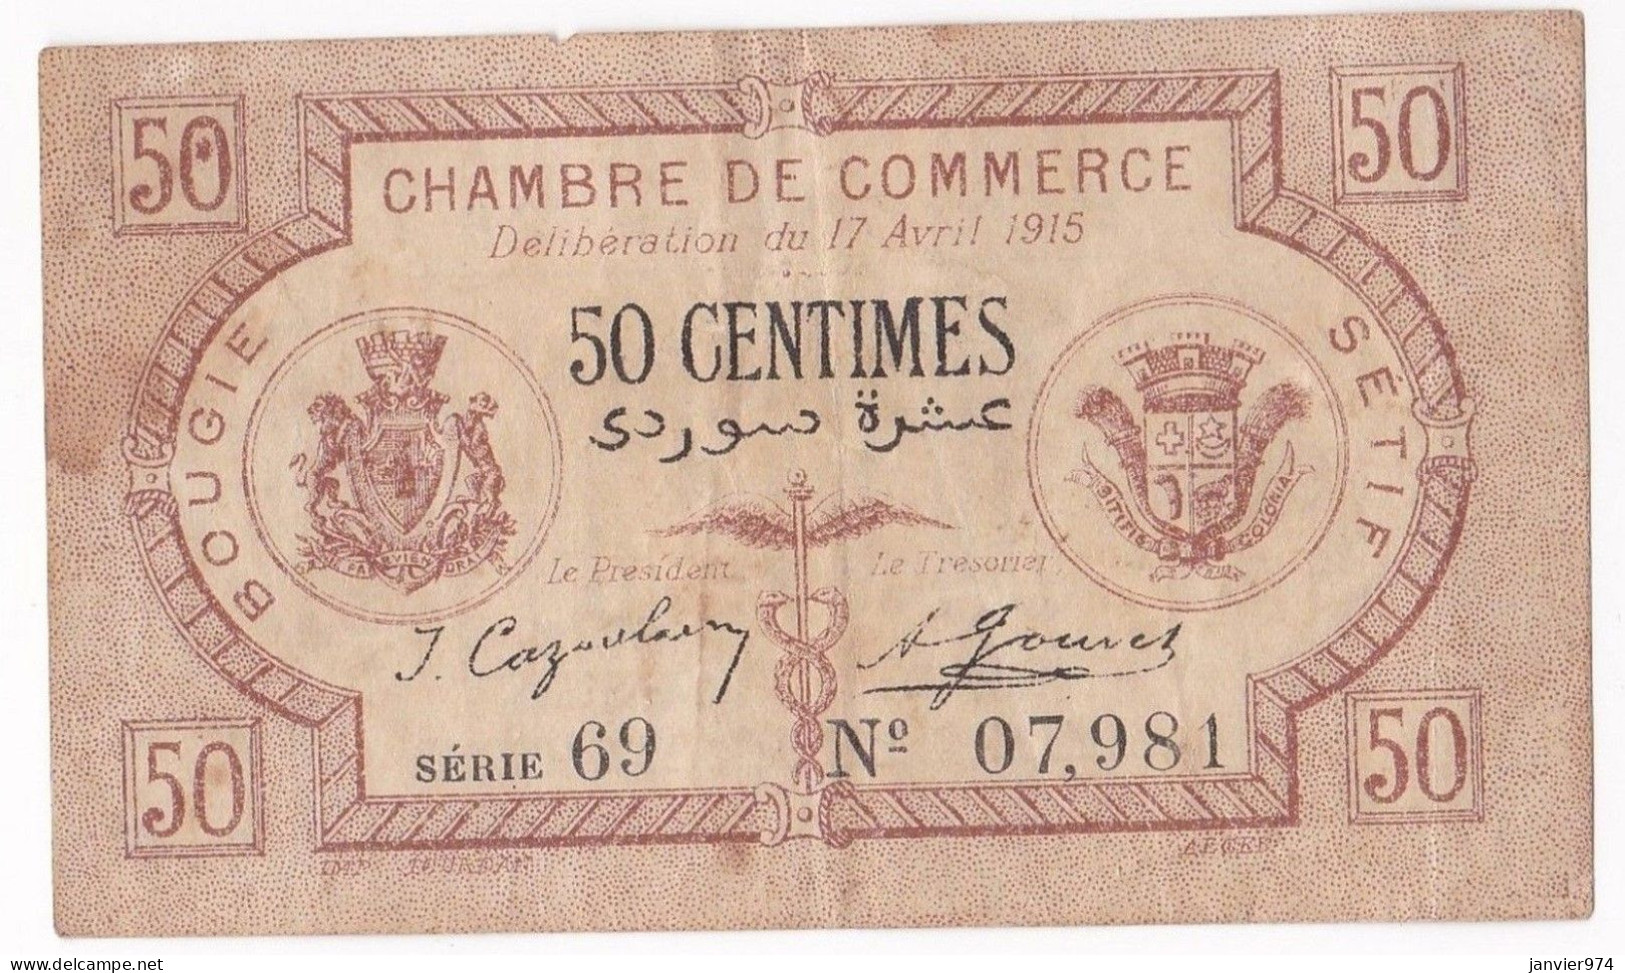 Algerie Bougie Sétif. Chambre De Commerce. 50 Centimes 1915 Serie 69 N° 07981, Billet Colonial Circulé - Algeria